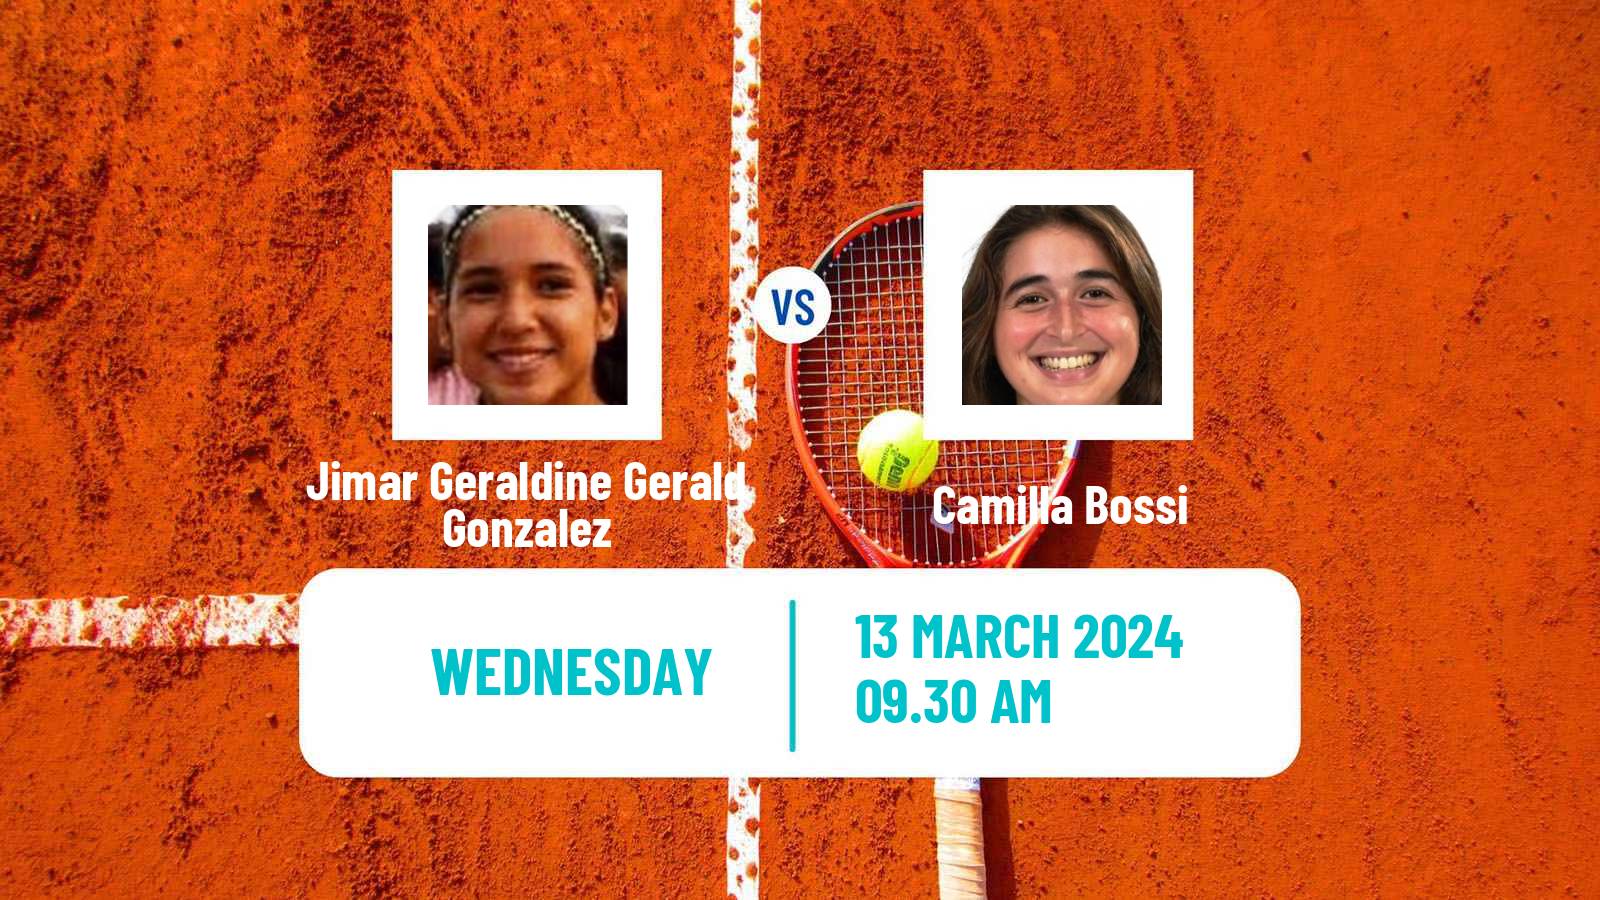 Tennis ITF W15 Sao Joao Da Boa Vista Women Jimar Geraldine Gerald Gonzalez - Camilla Bossi